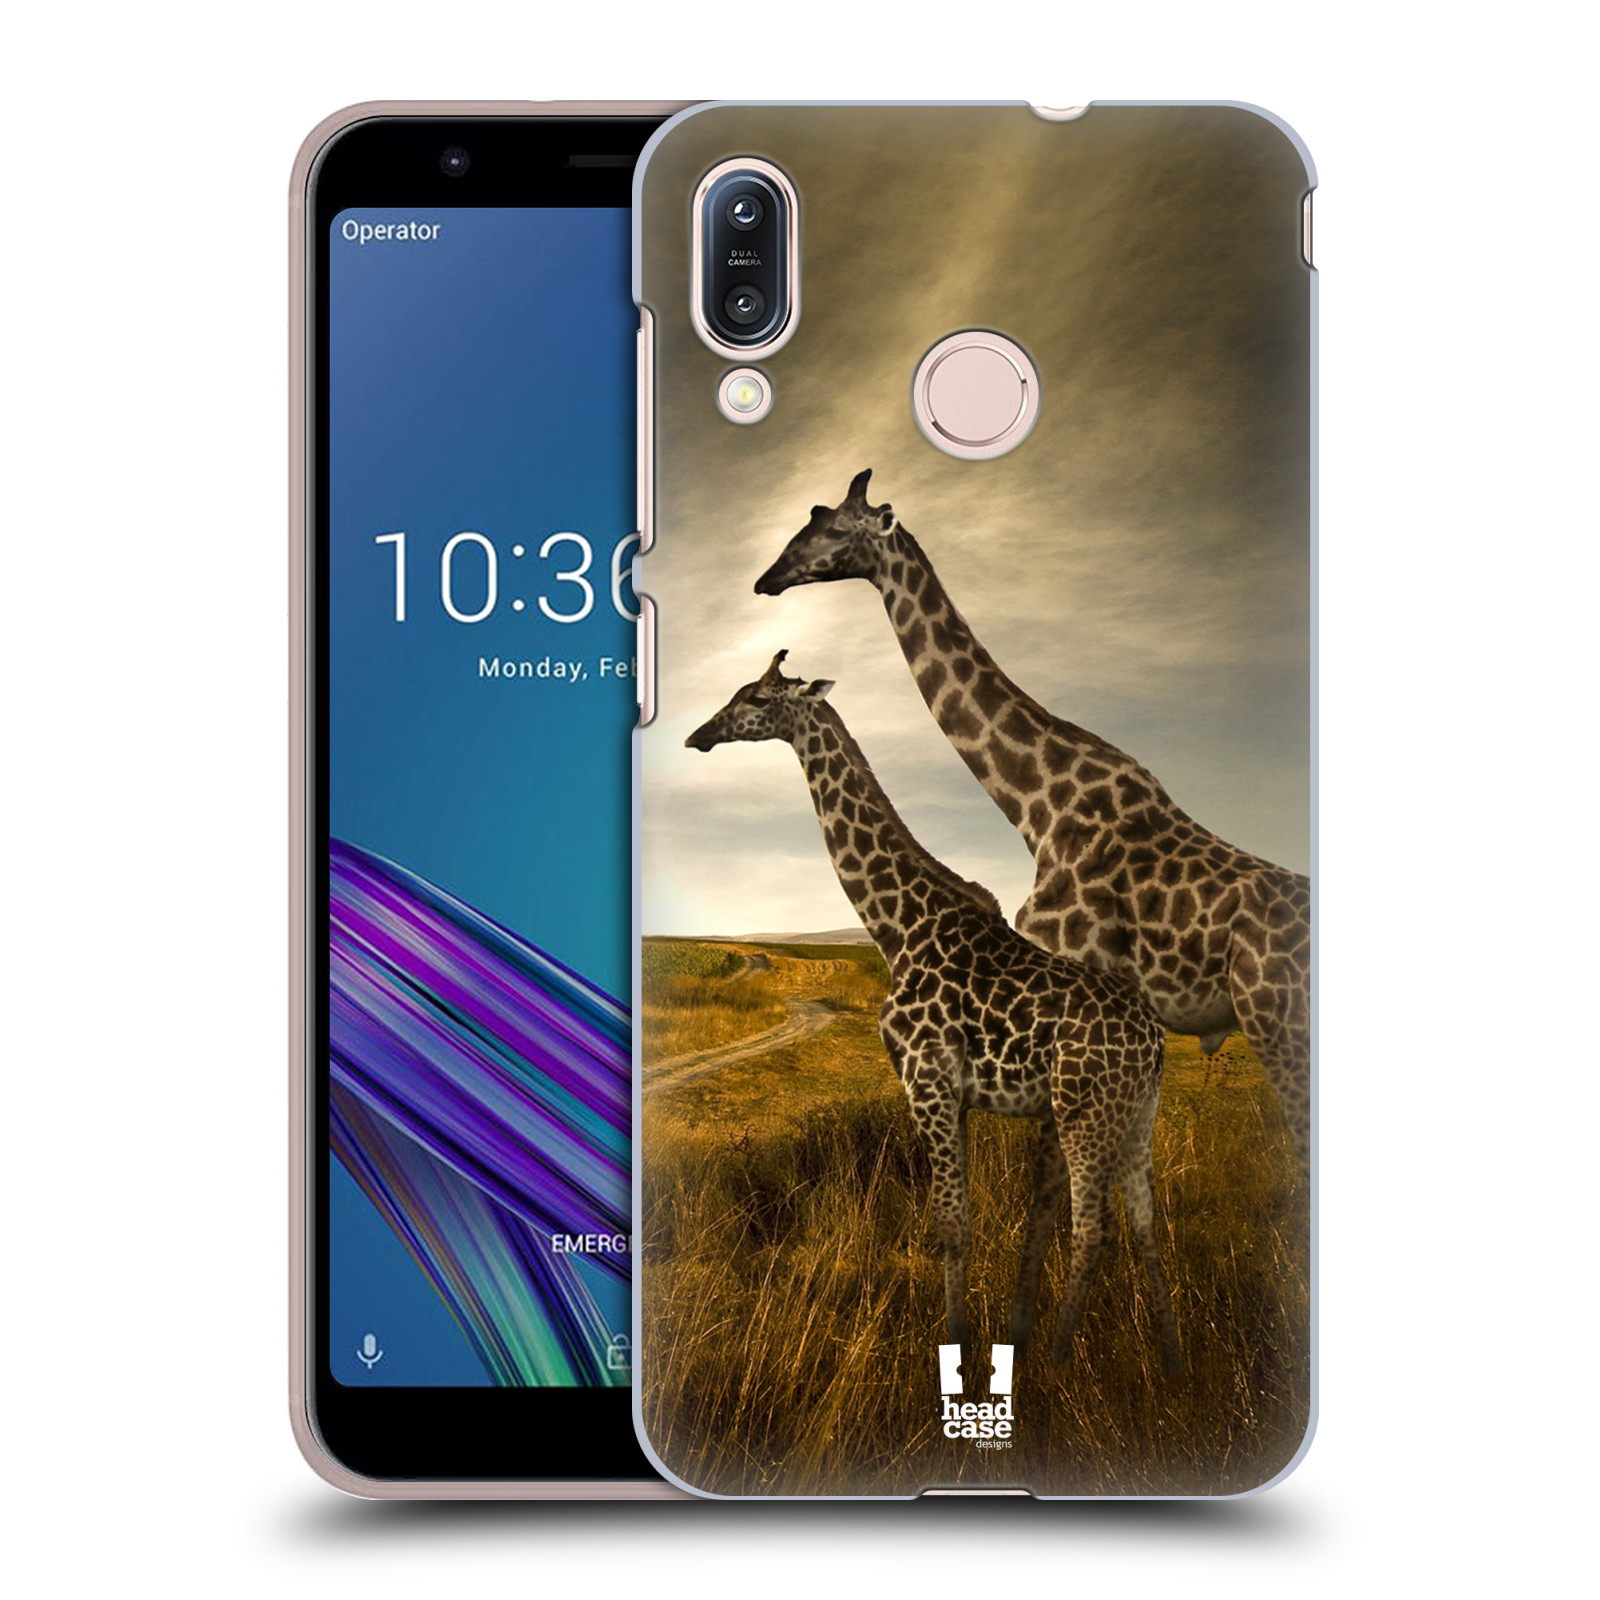 Zadní obal pro mobil Asus Zenfone Max (M1) ZB555KL - HEAD CASE - Svět zvířat žirafy